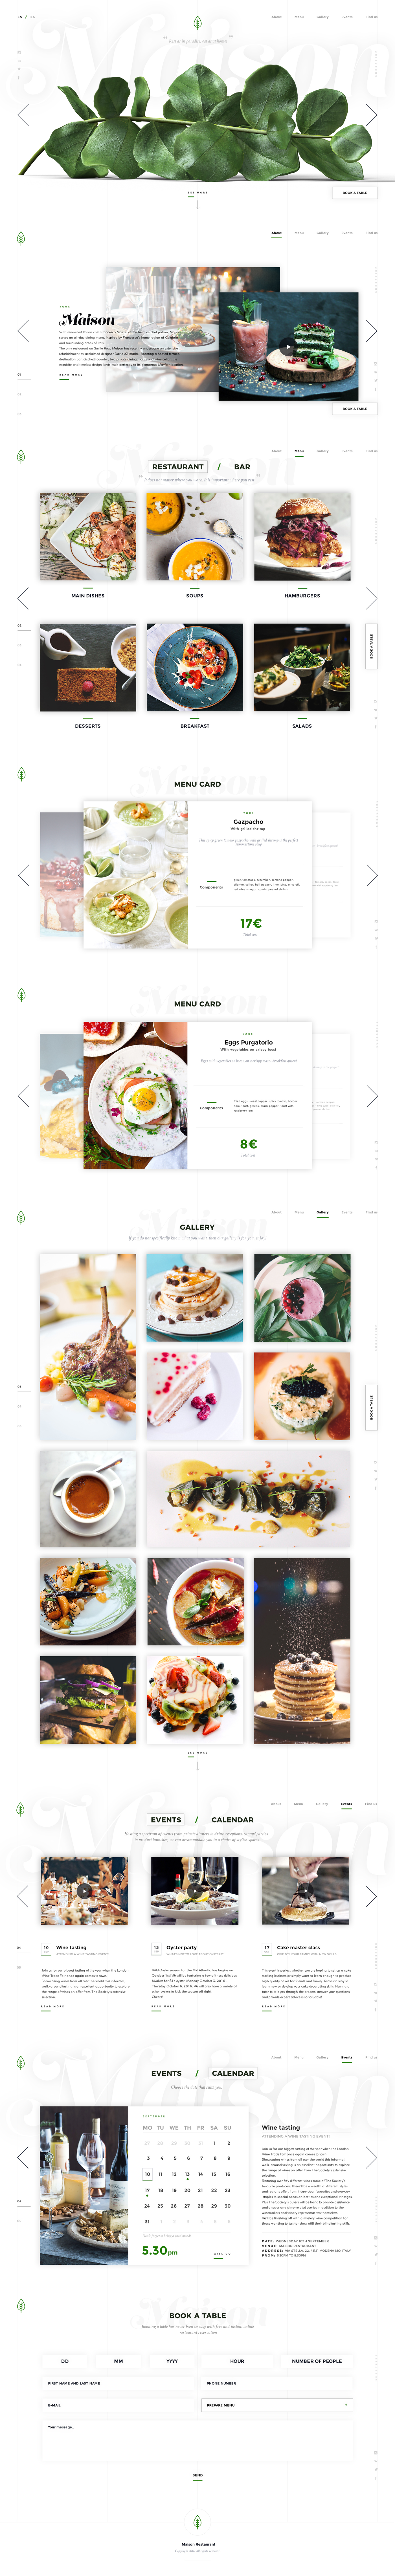 Web Website restaurant cafe Food  clean minimal design UI ux